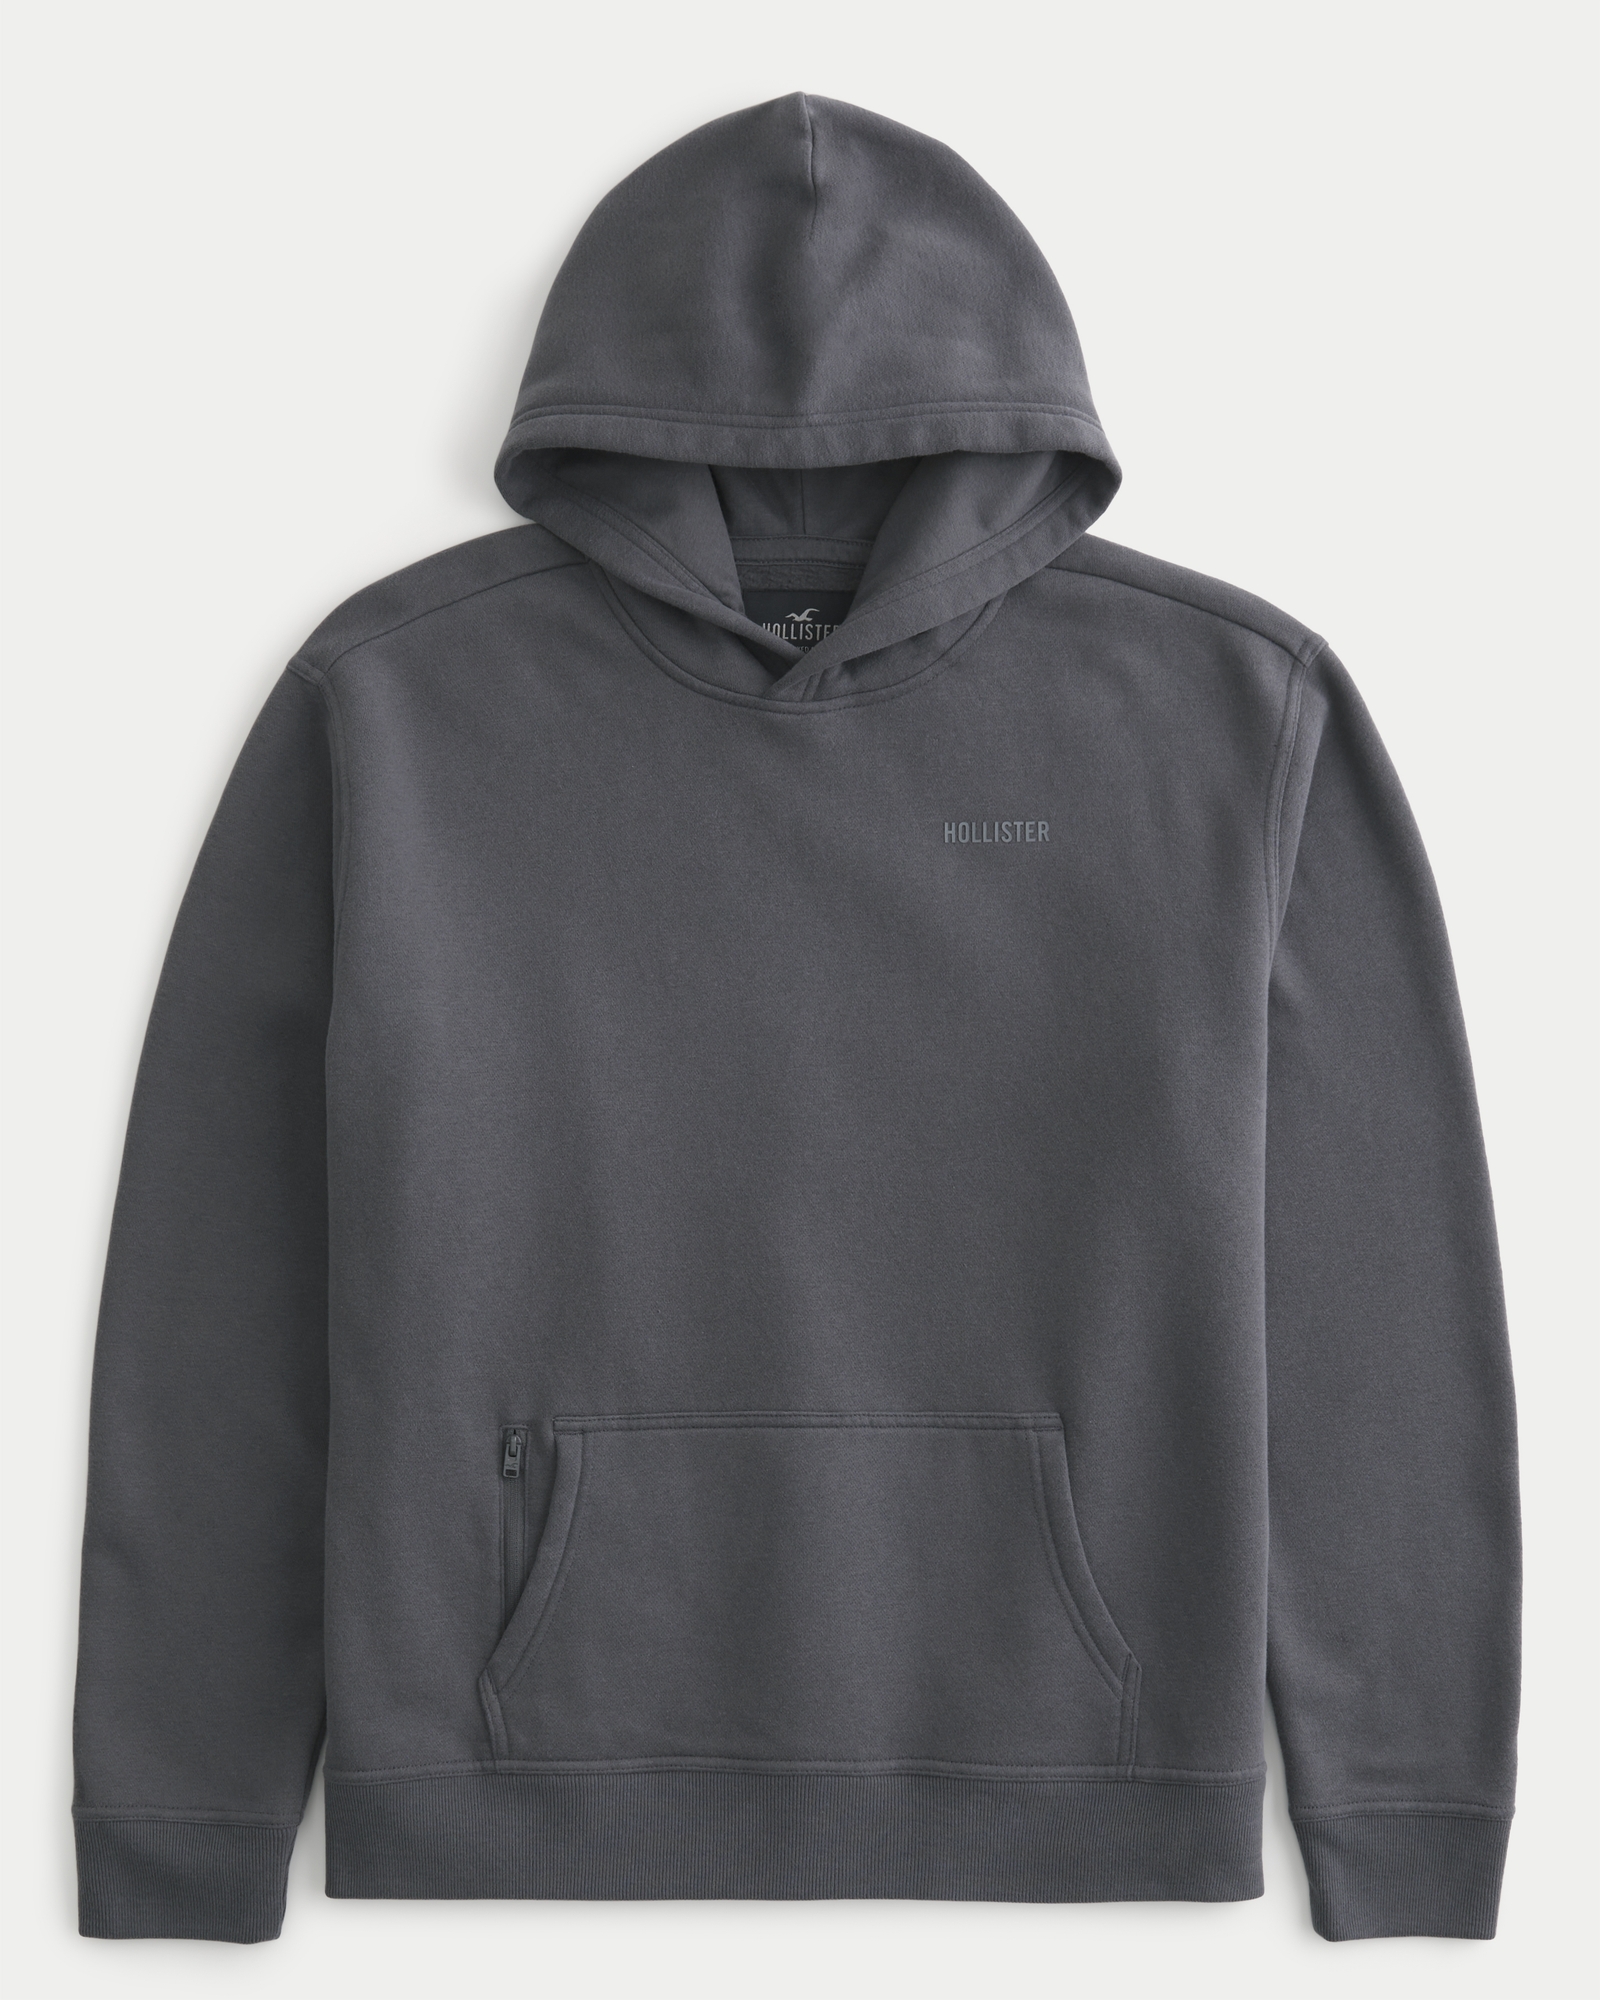 Hollister graphic sweatshirt in dark grey